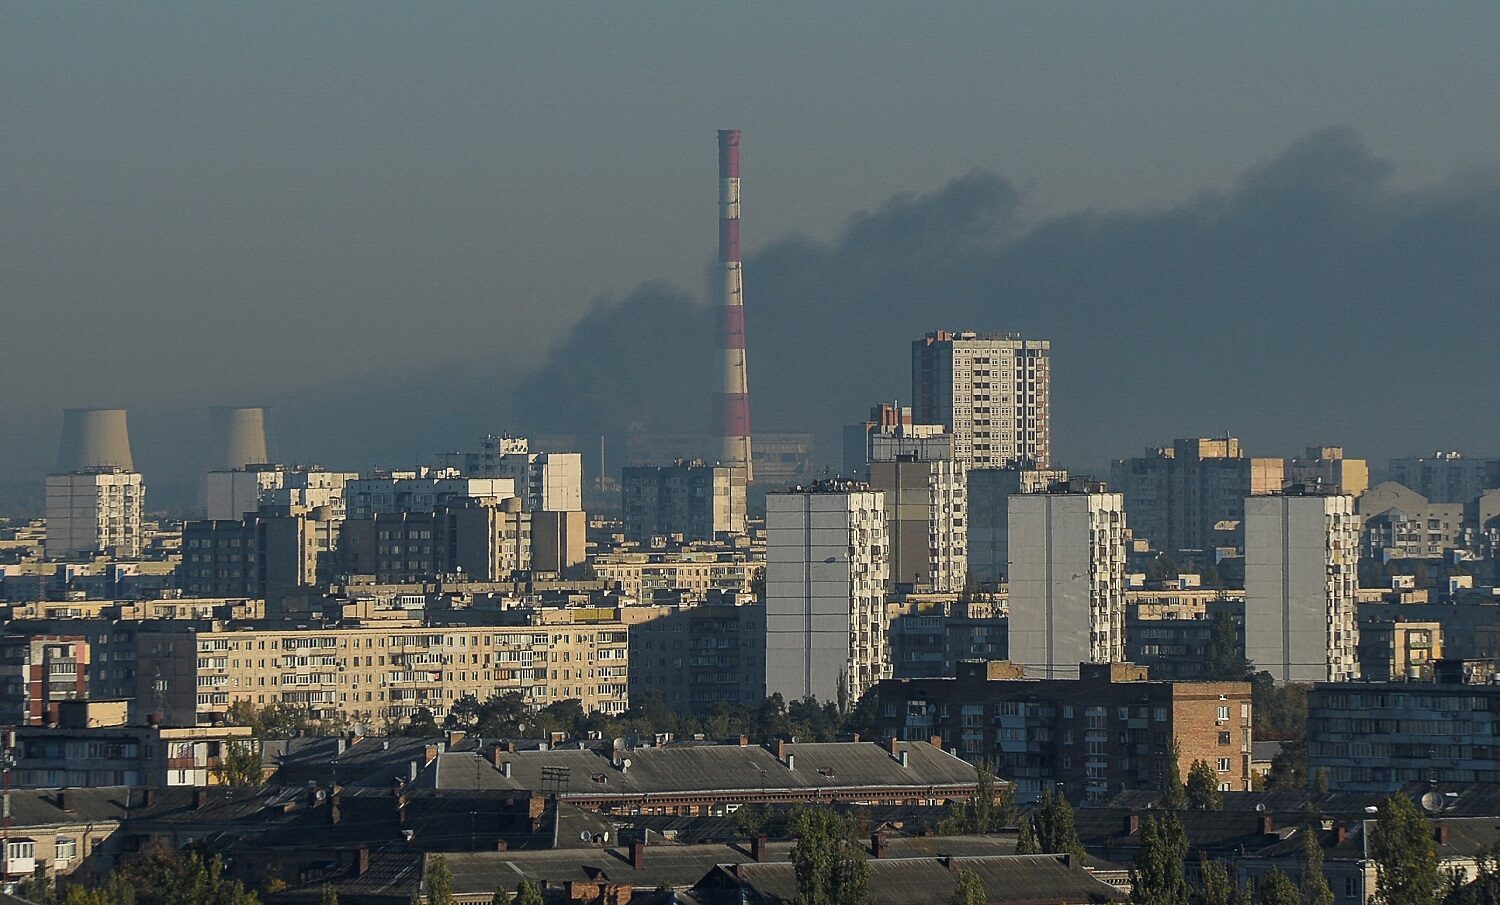 ไฟดับทั่วยูเครน! รัสเซียเปิดฉากโจมตีโรงไฟฟ้ารอบใหม่ 'เซเลนสกี' ชี้ถูกทำลาย 30% ใน 8 วัน